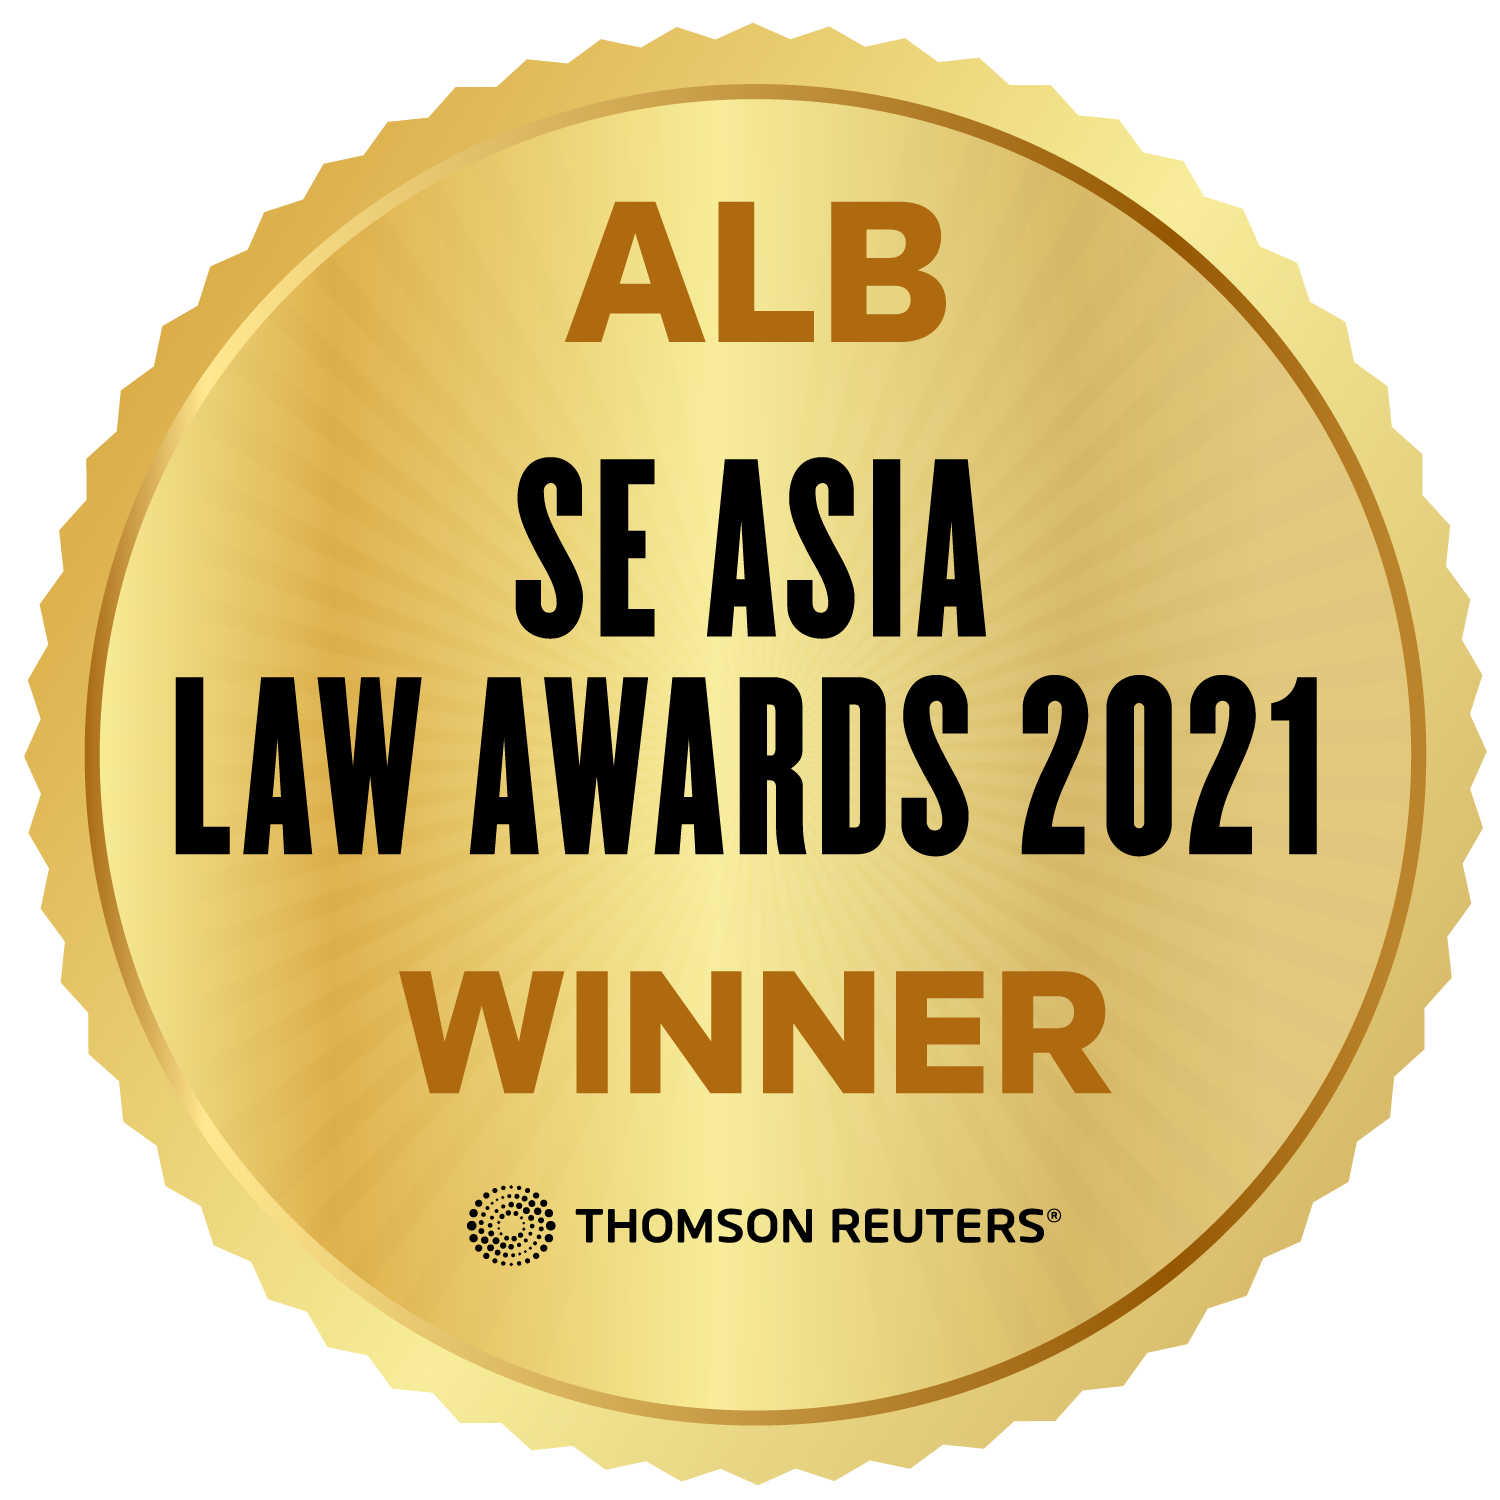 alb-seala-law-awards-2021-winner-badge.png